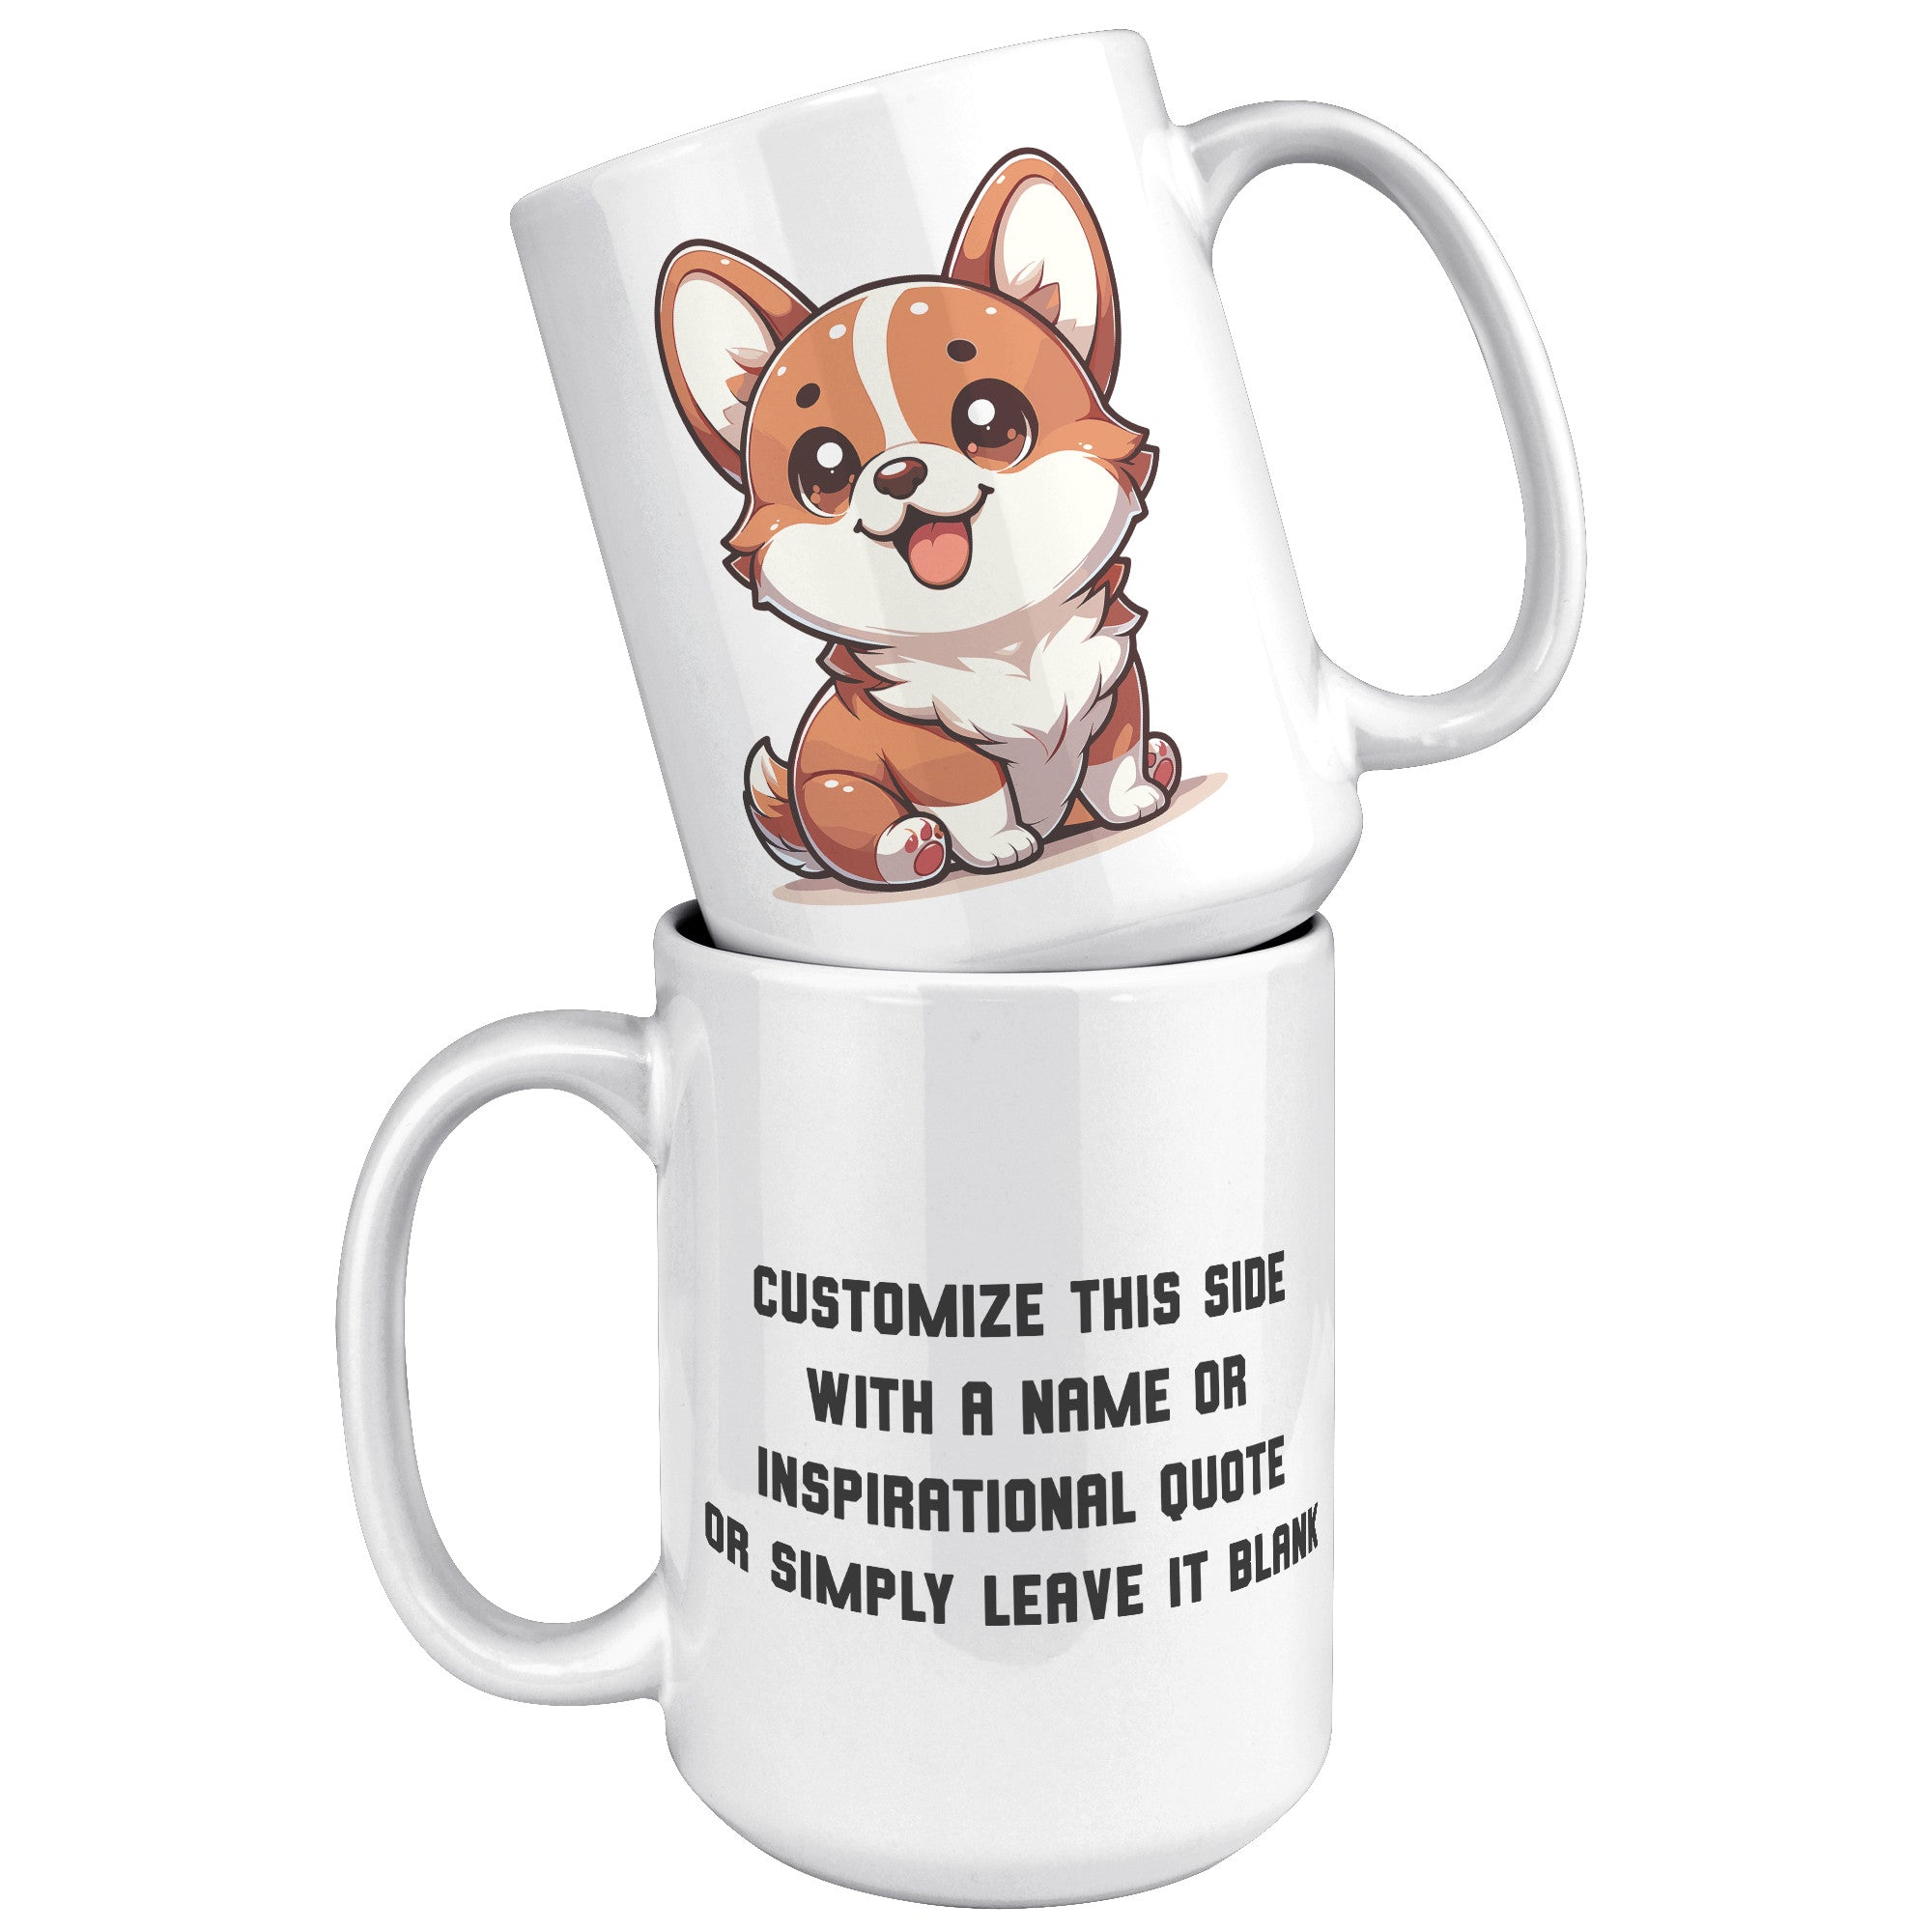 15oz Corgi Lover Cartoon Mug - Adorable Corgi Dog Mug - Perfect Gift for Corgi Owners - Cute Pembroke Welsh Corgi Mug" - E1